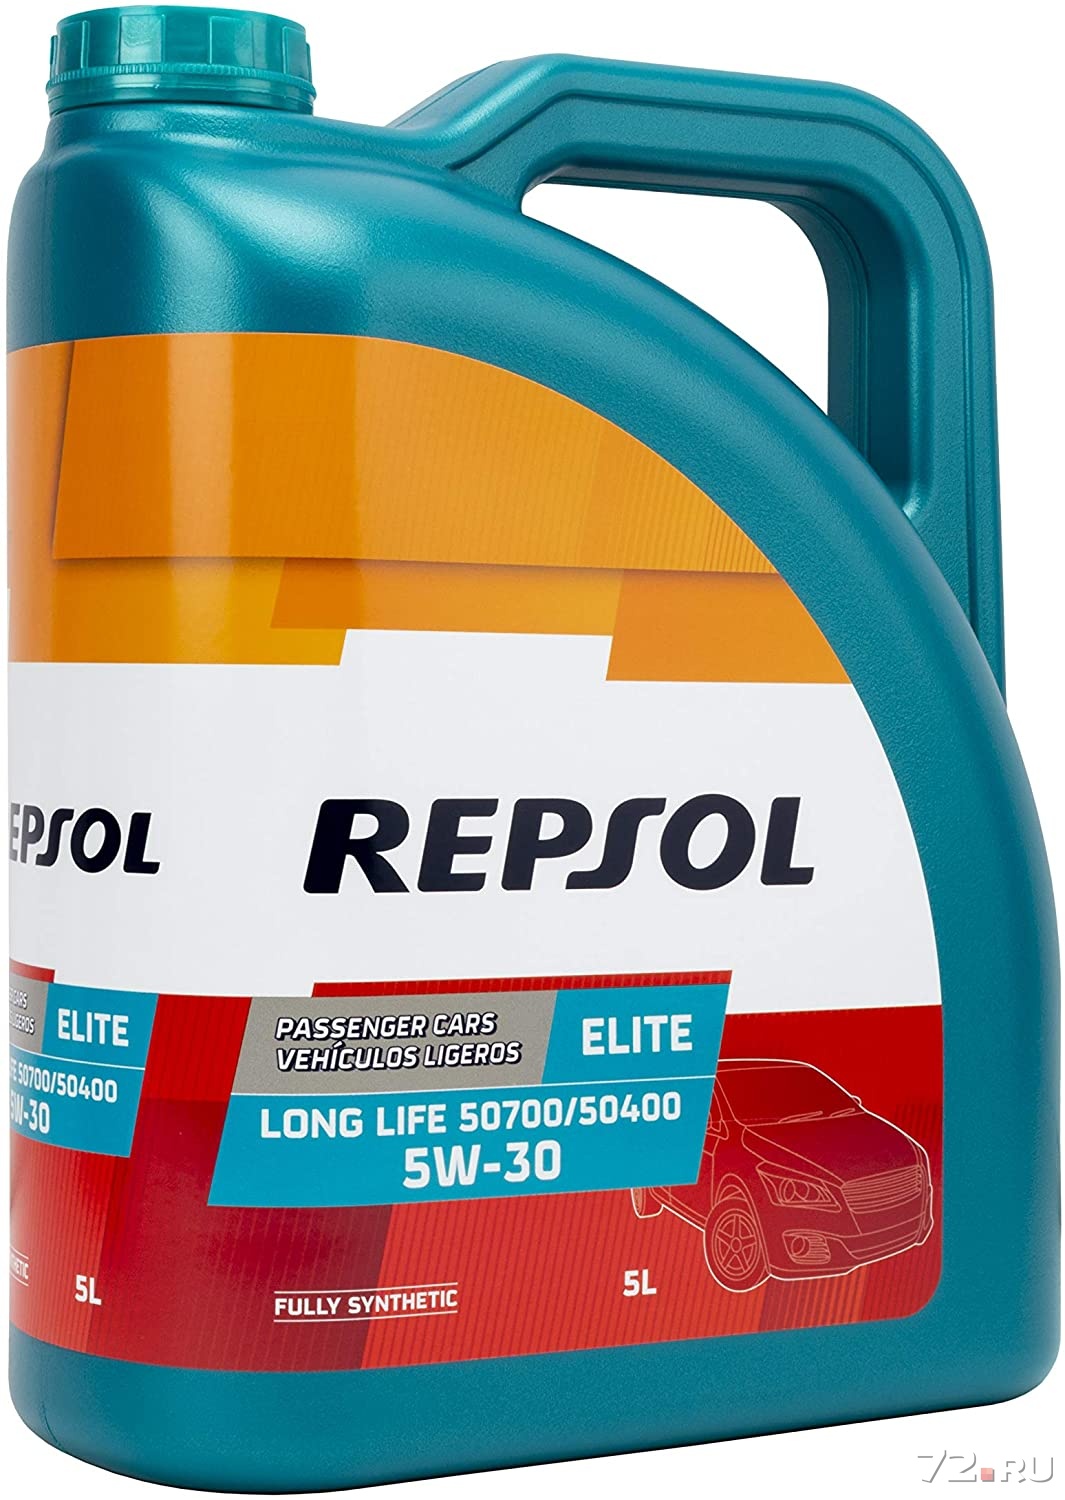 Моторное масло репсол 5w40. Repsol Elite Evolution 5w40. Repsol Elite 50501 TDI 5w40. Масло Repsol 5w40. Repsol Elite 50501 TDI 5w-40 5л..